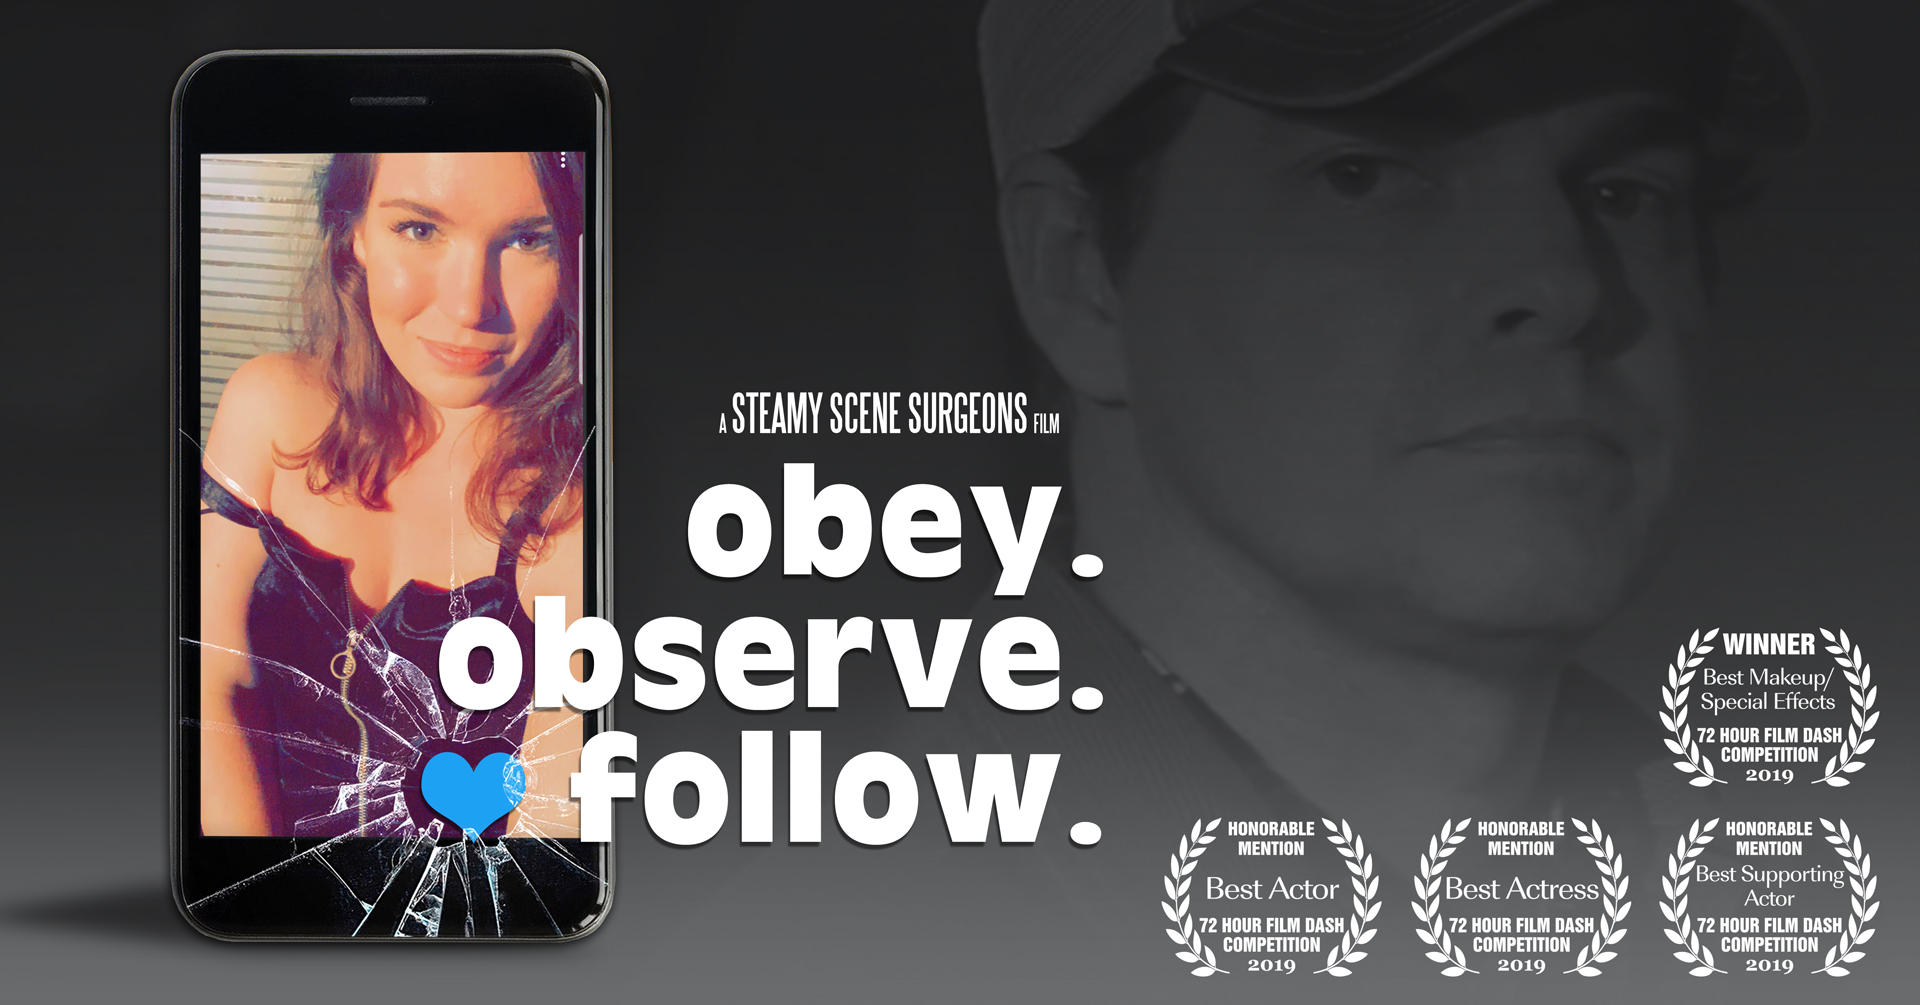 obey. observe. follow.